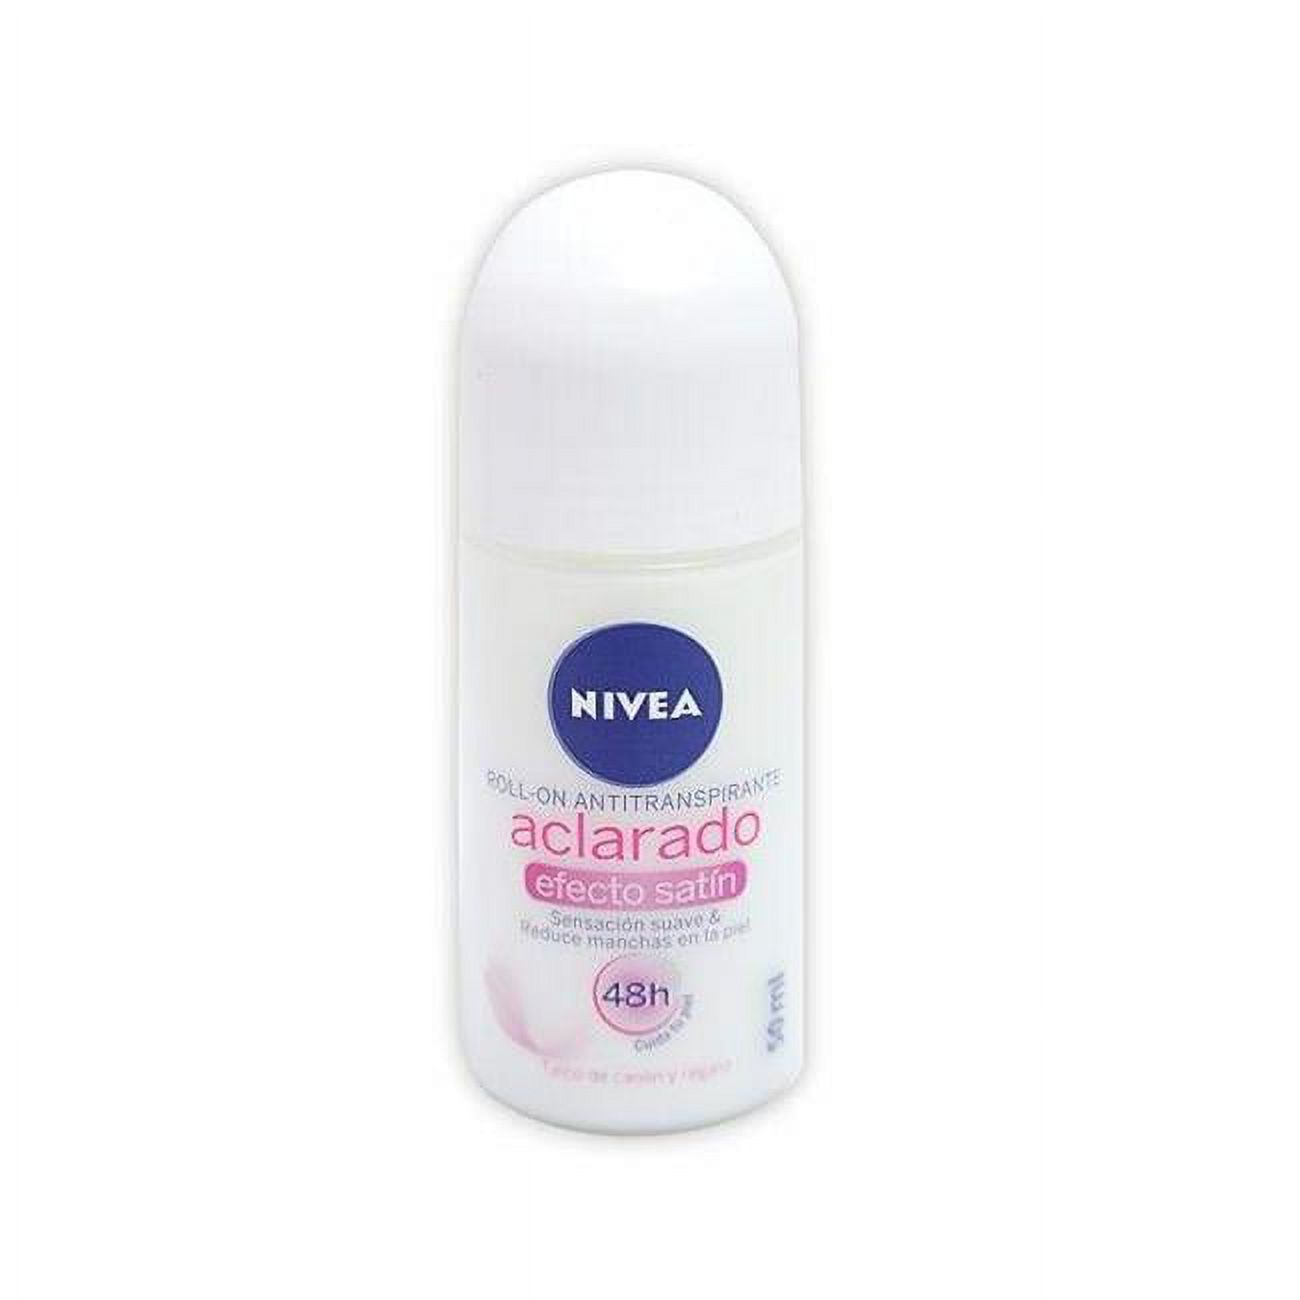 NIVEA 50 ml Aclarado n Roll On Deodorant for Women - image 1 of 1